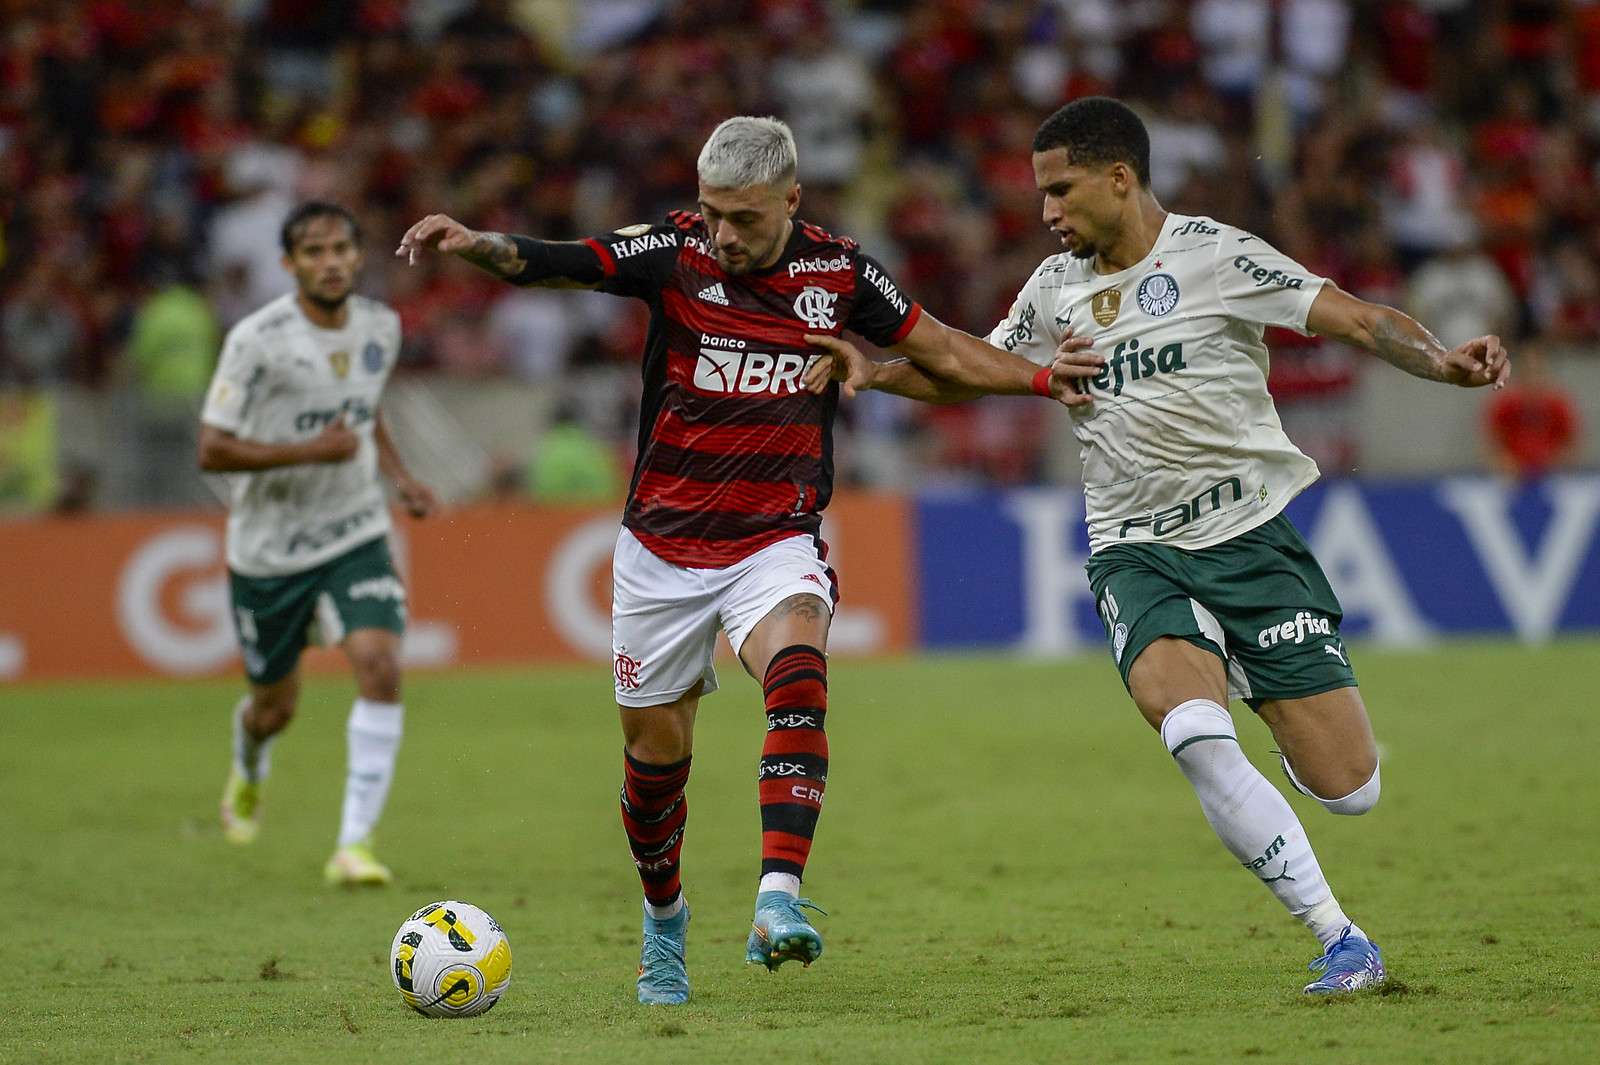 Com liderança em jogo, Brasileirão tem Flamengo x Palmeiras nesta noite -  Esportes - Campo Grande News